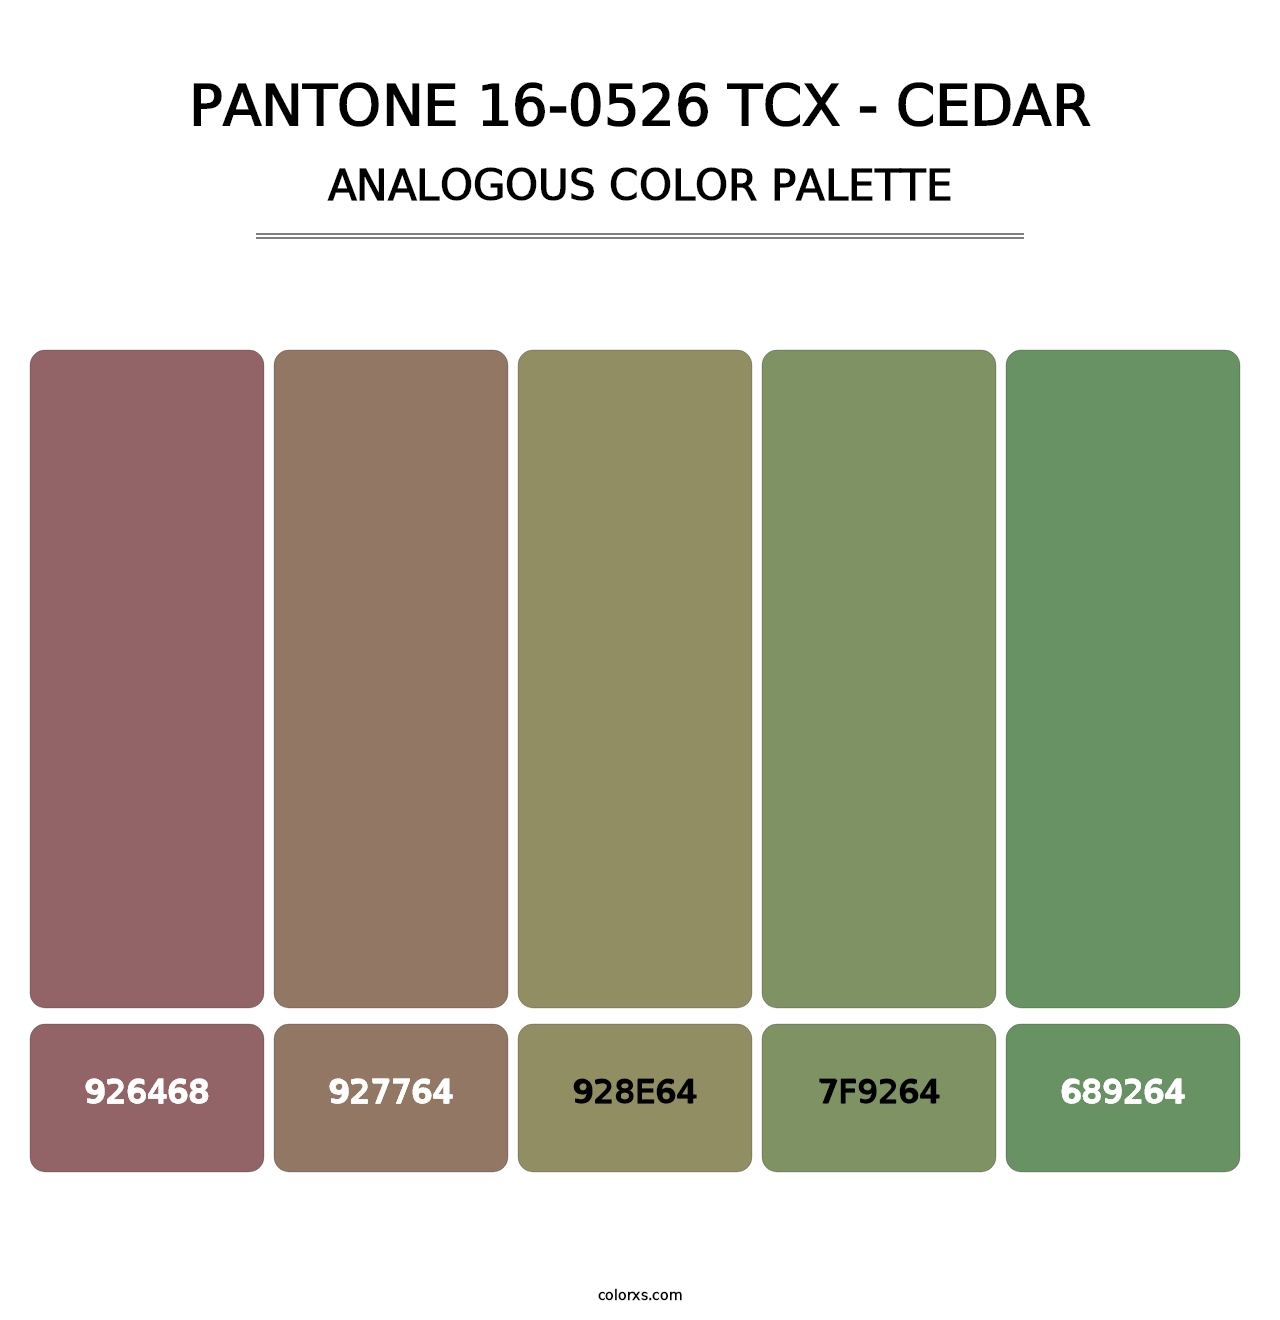 PANTONE 16-0526 TCX - Cedar - Analogous Color Palette